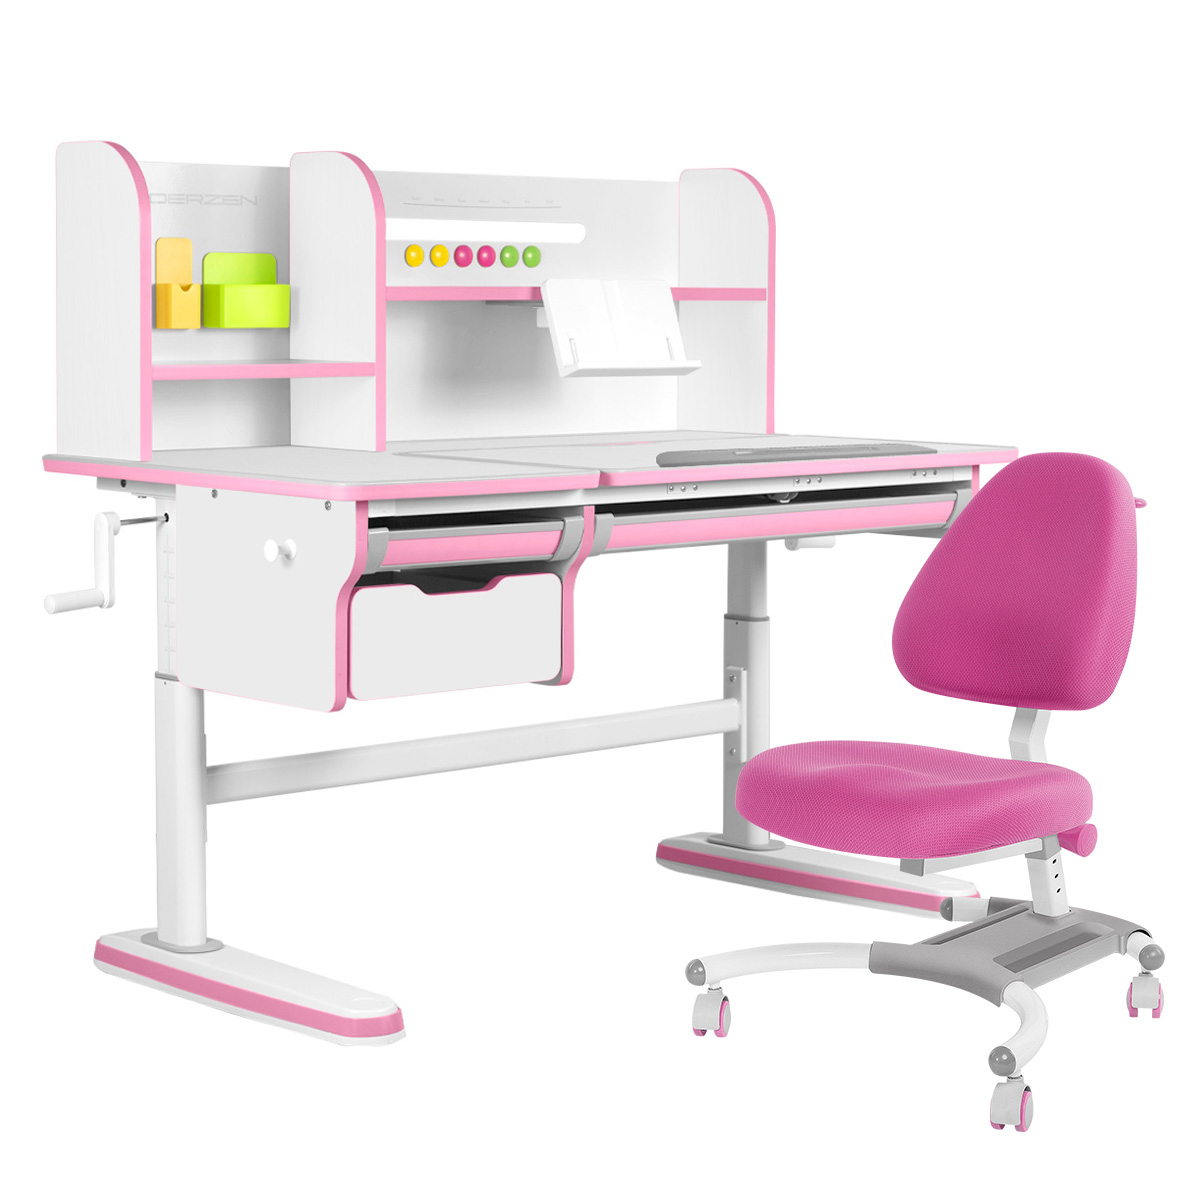 Комплект парта KinderZen Dali Plus белый/розовый с розовым креслом Figra комплект парта anatomica study 100 lux белый розовый с розовым креслом figra